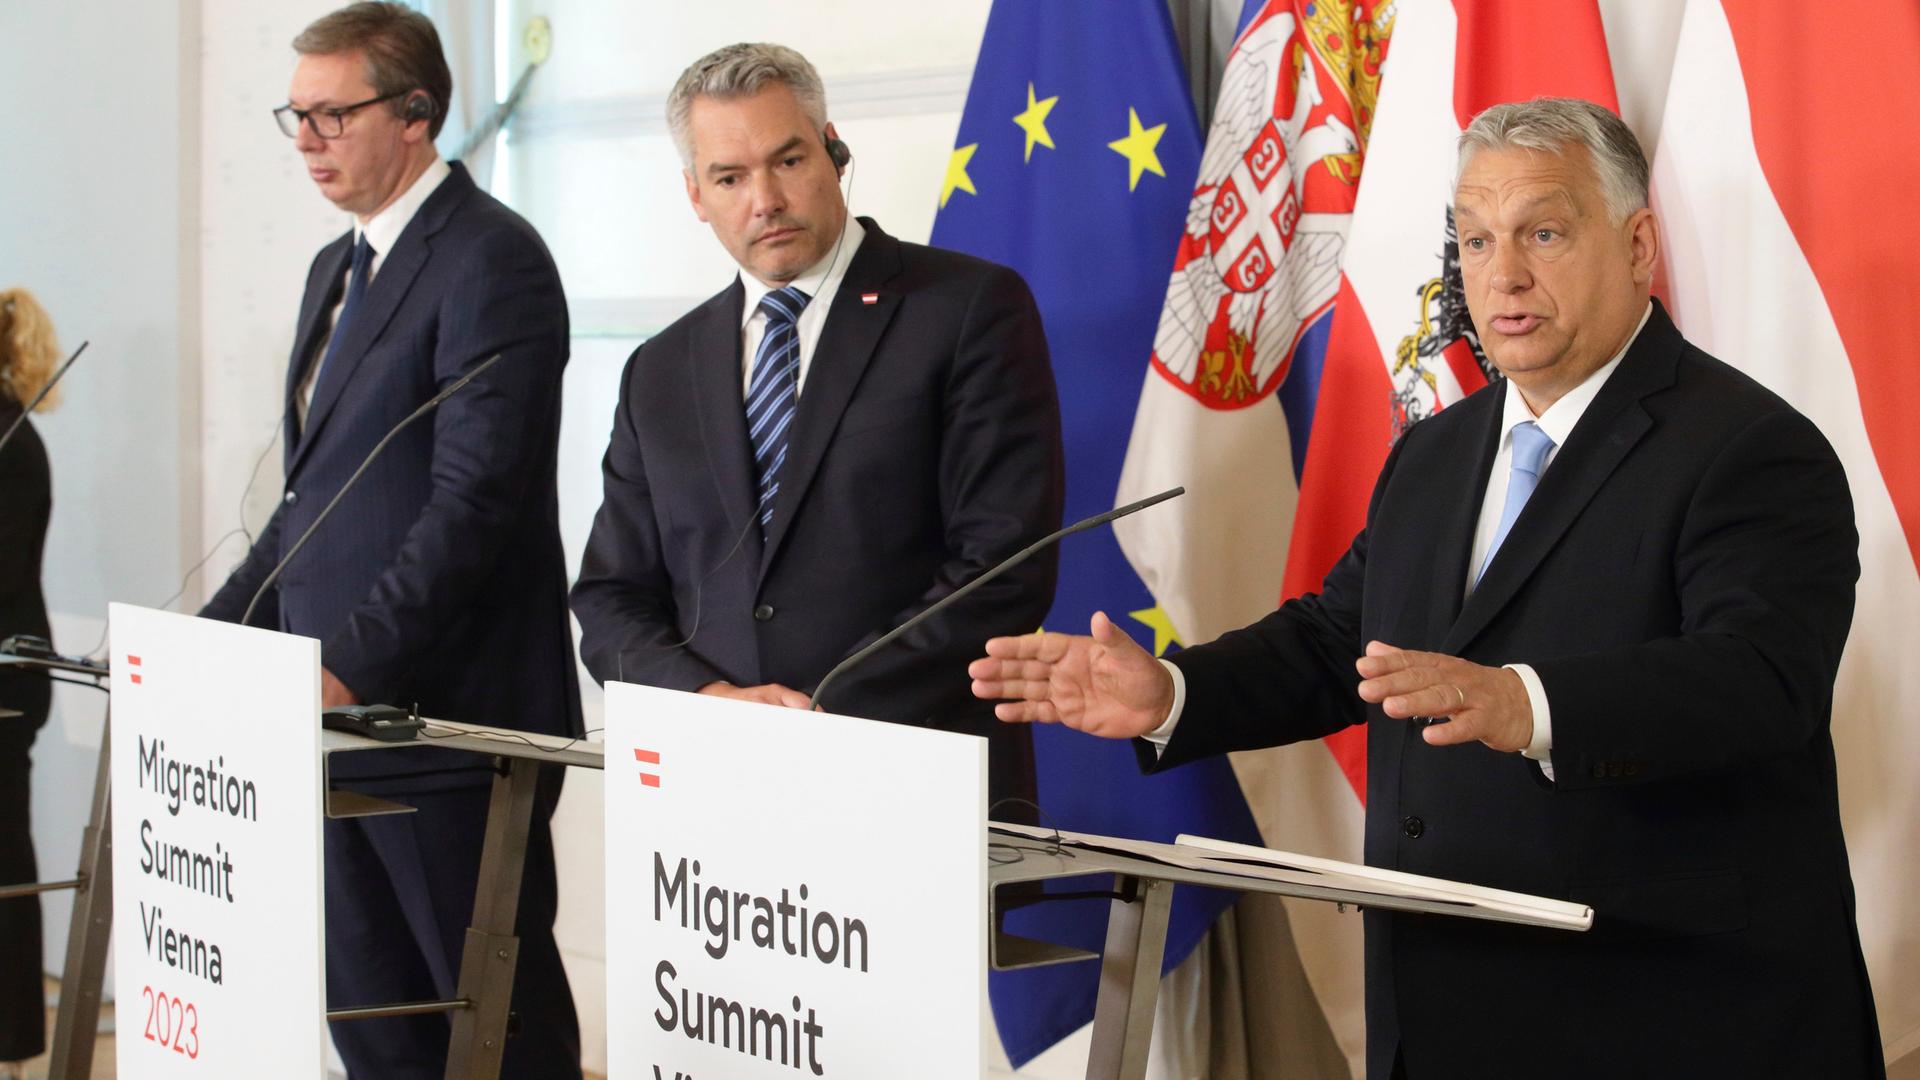 Aleksandar Vucic, Präsident von Serbien, Karl Nehammer, Bundeskanzler von Österreich, und Viktor Orban, Ministerpräsident von Ungarn, stehen nebeneinander an Rednerpulten.